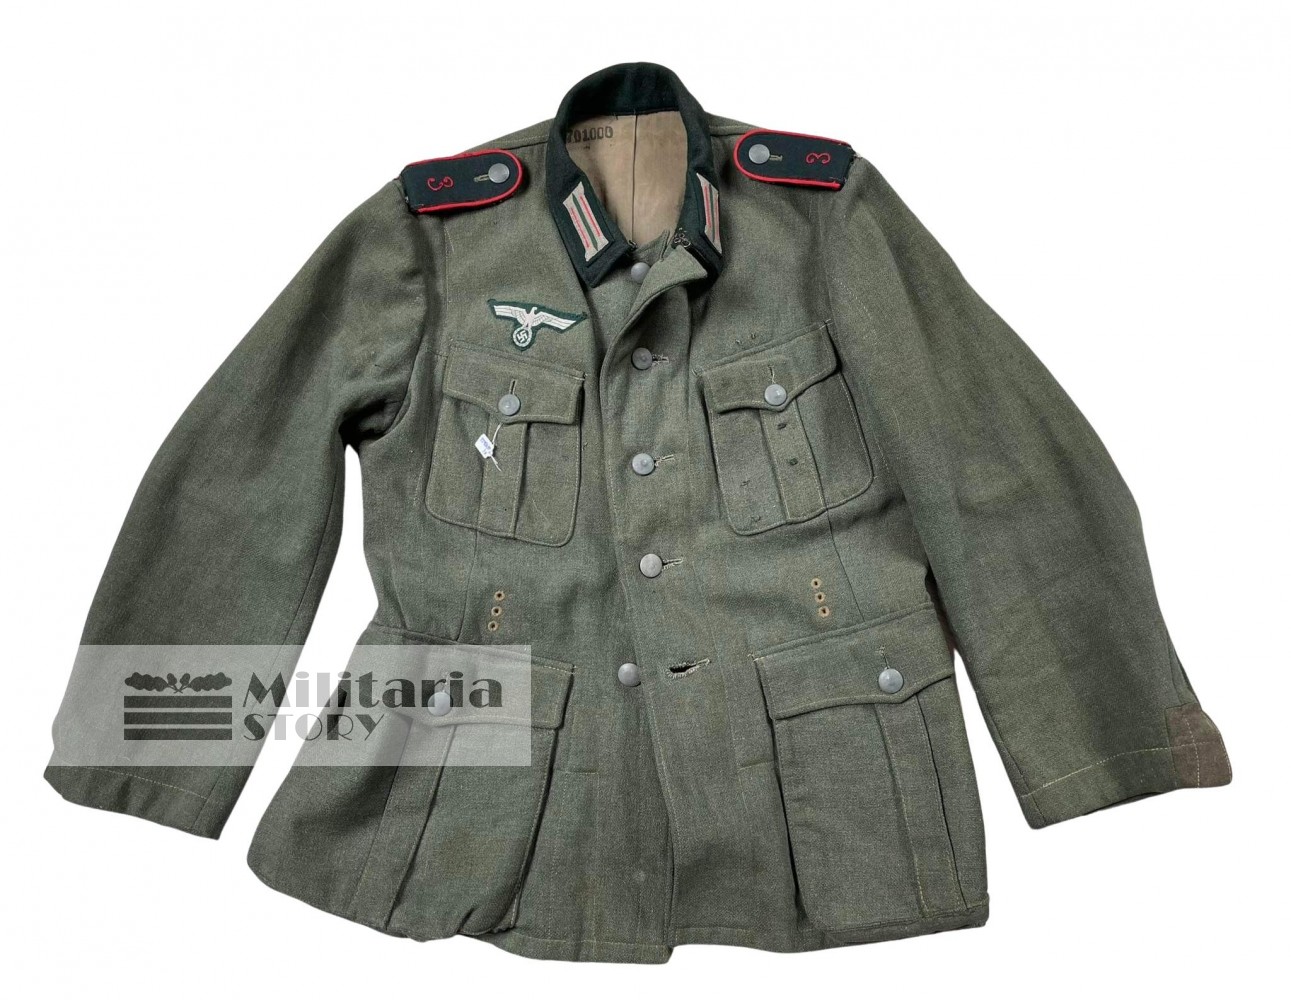 Heer m36 uniform of Unit "3" - Heer m36 uniform of Unit "3": Third Reich Uniforms